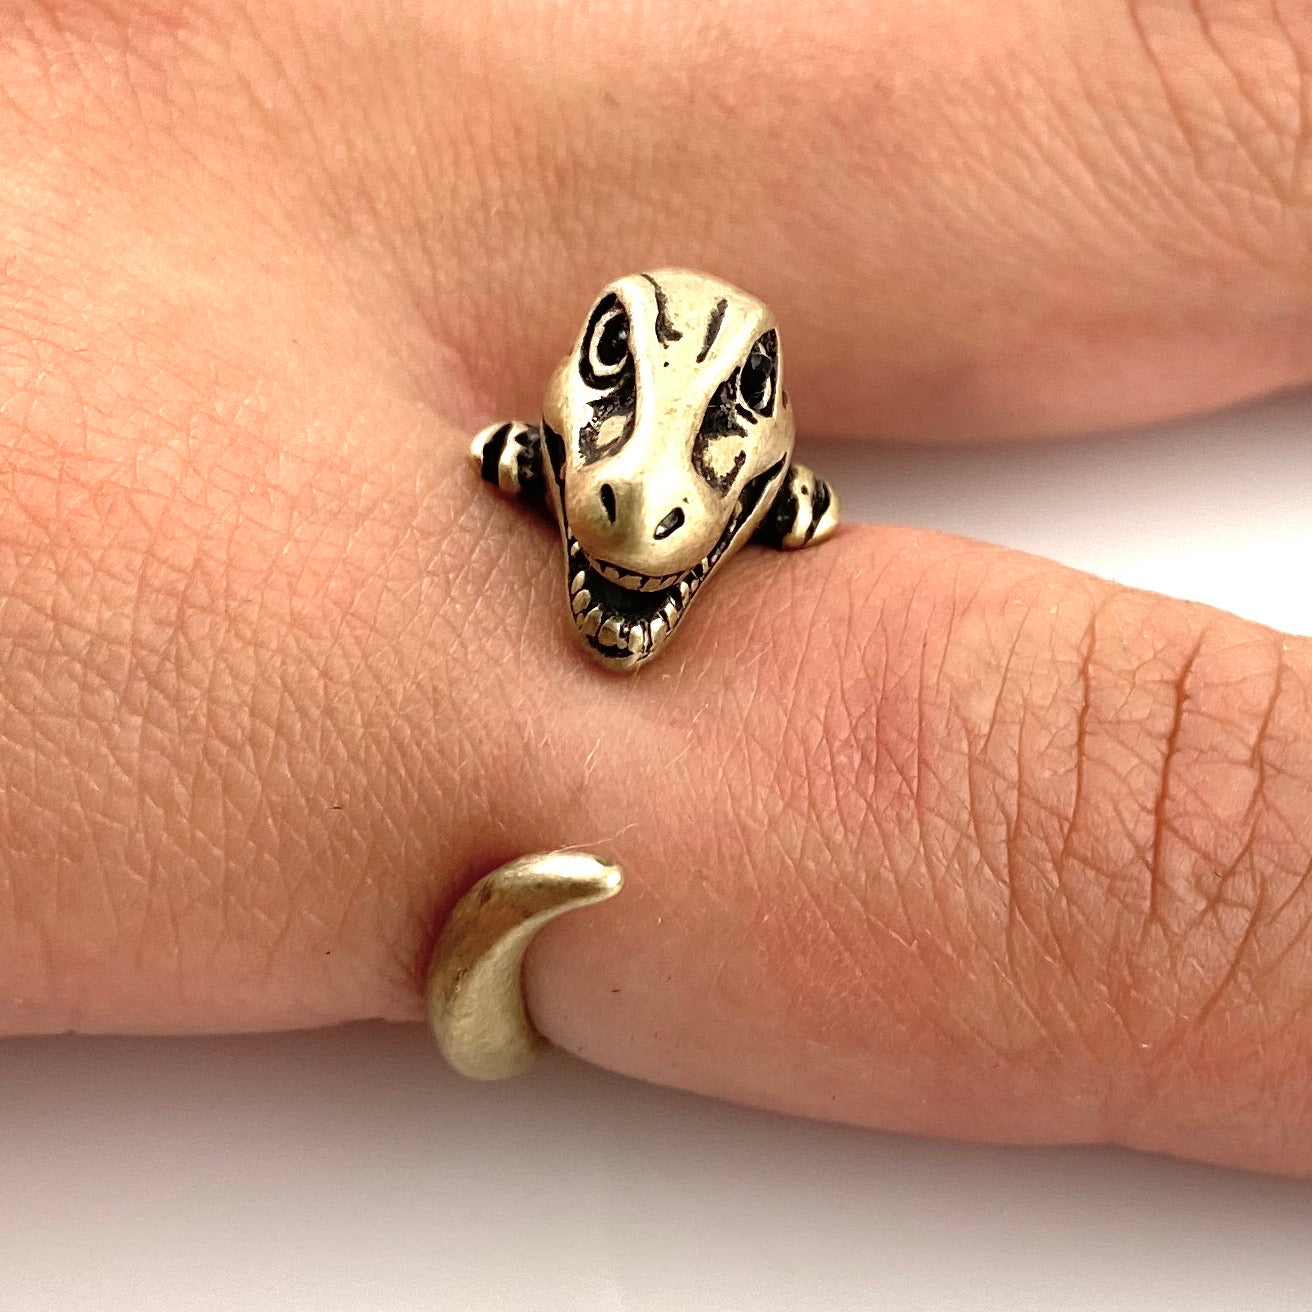 Animal Wrap Ring - T-Rex - Yellow Bronze - Adjustable Ring - Keja Designs Jewelry